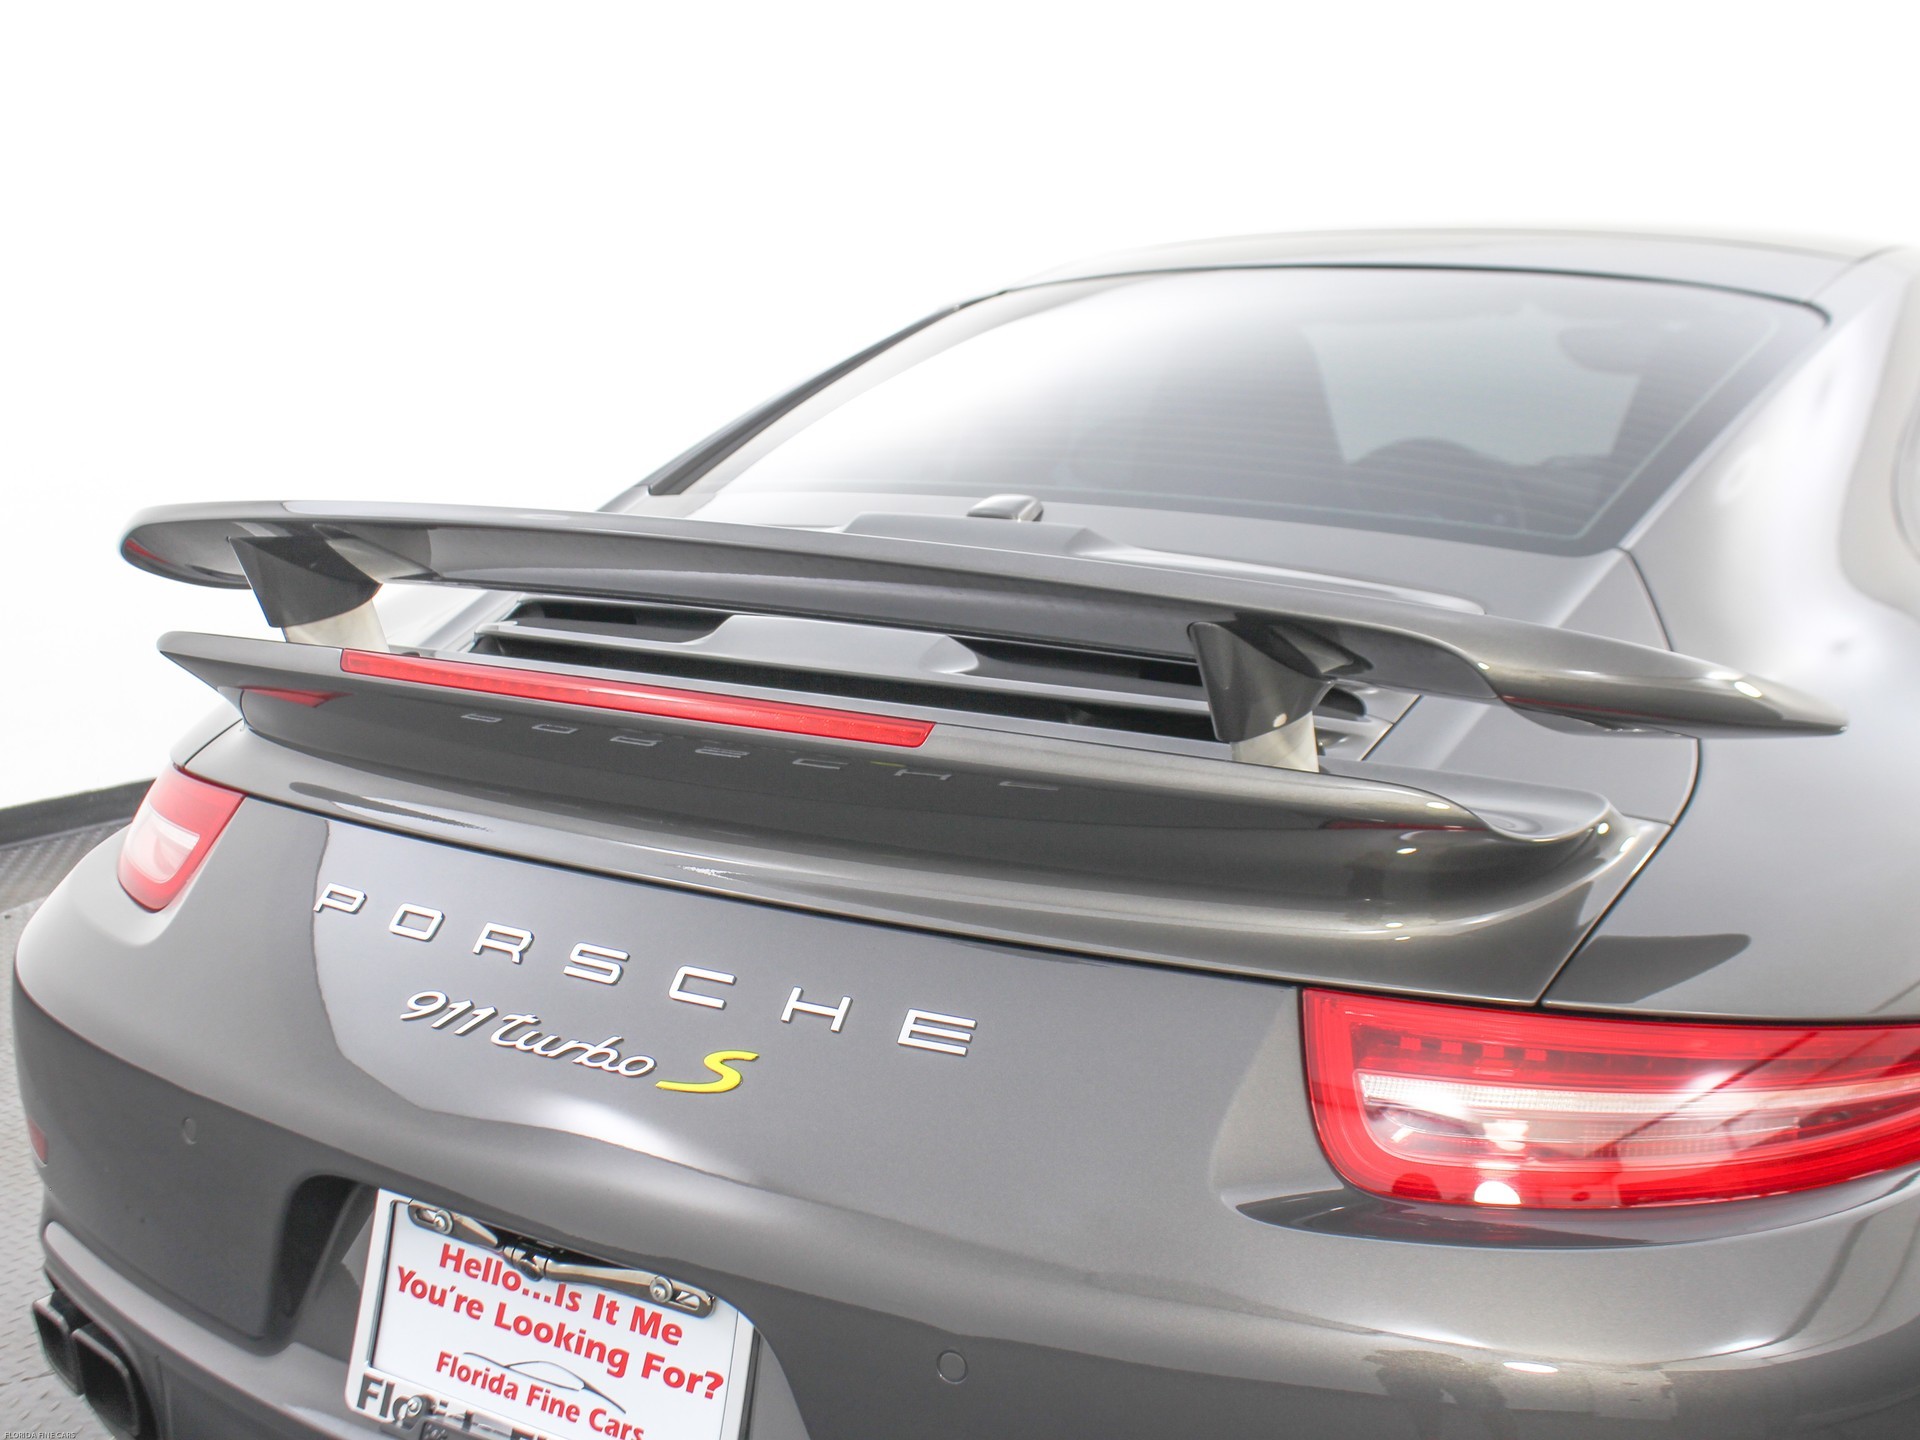 Florida Fine Cars - Used PORSCHE 911 2014 MIAMI TURBO S